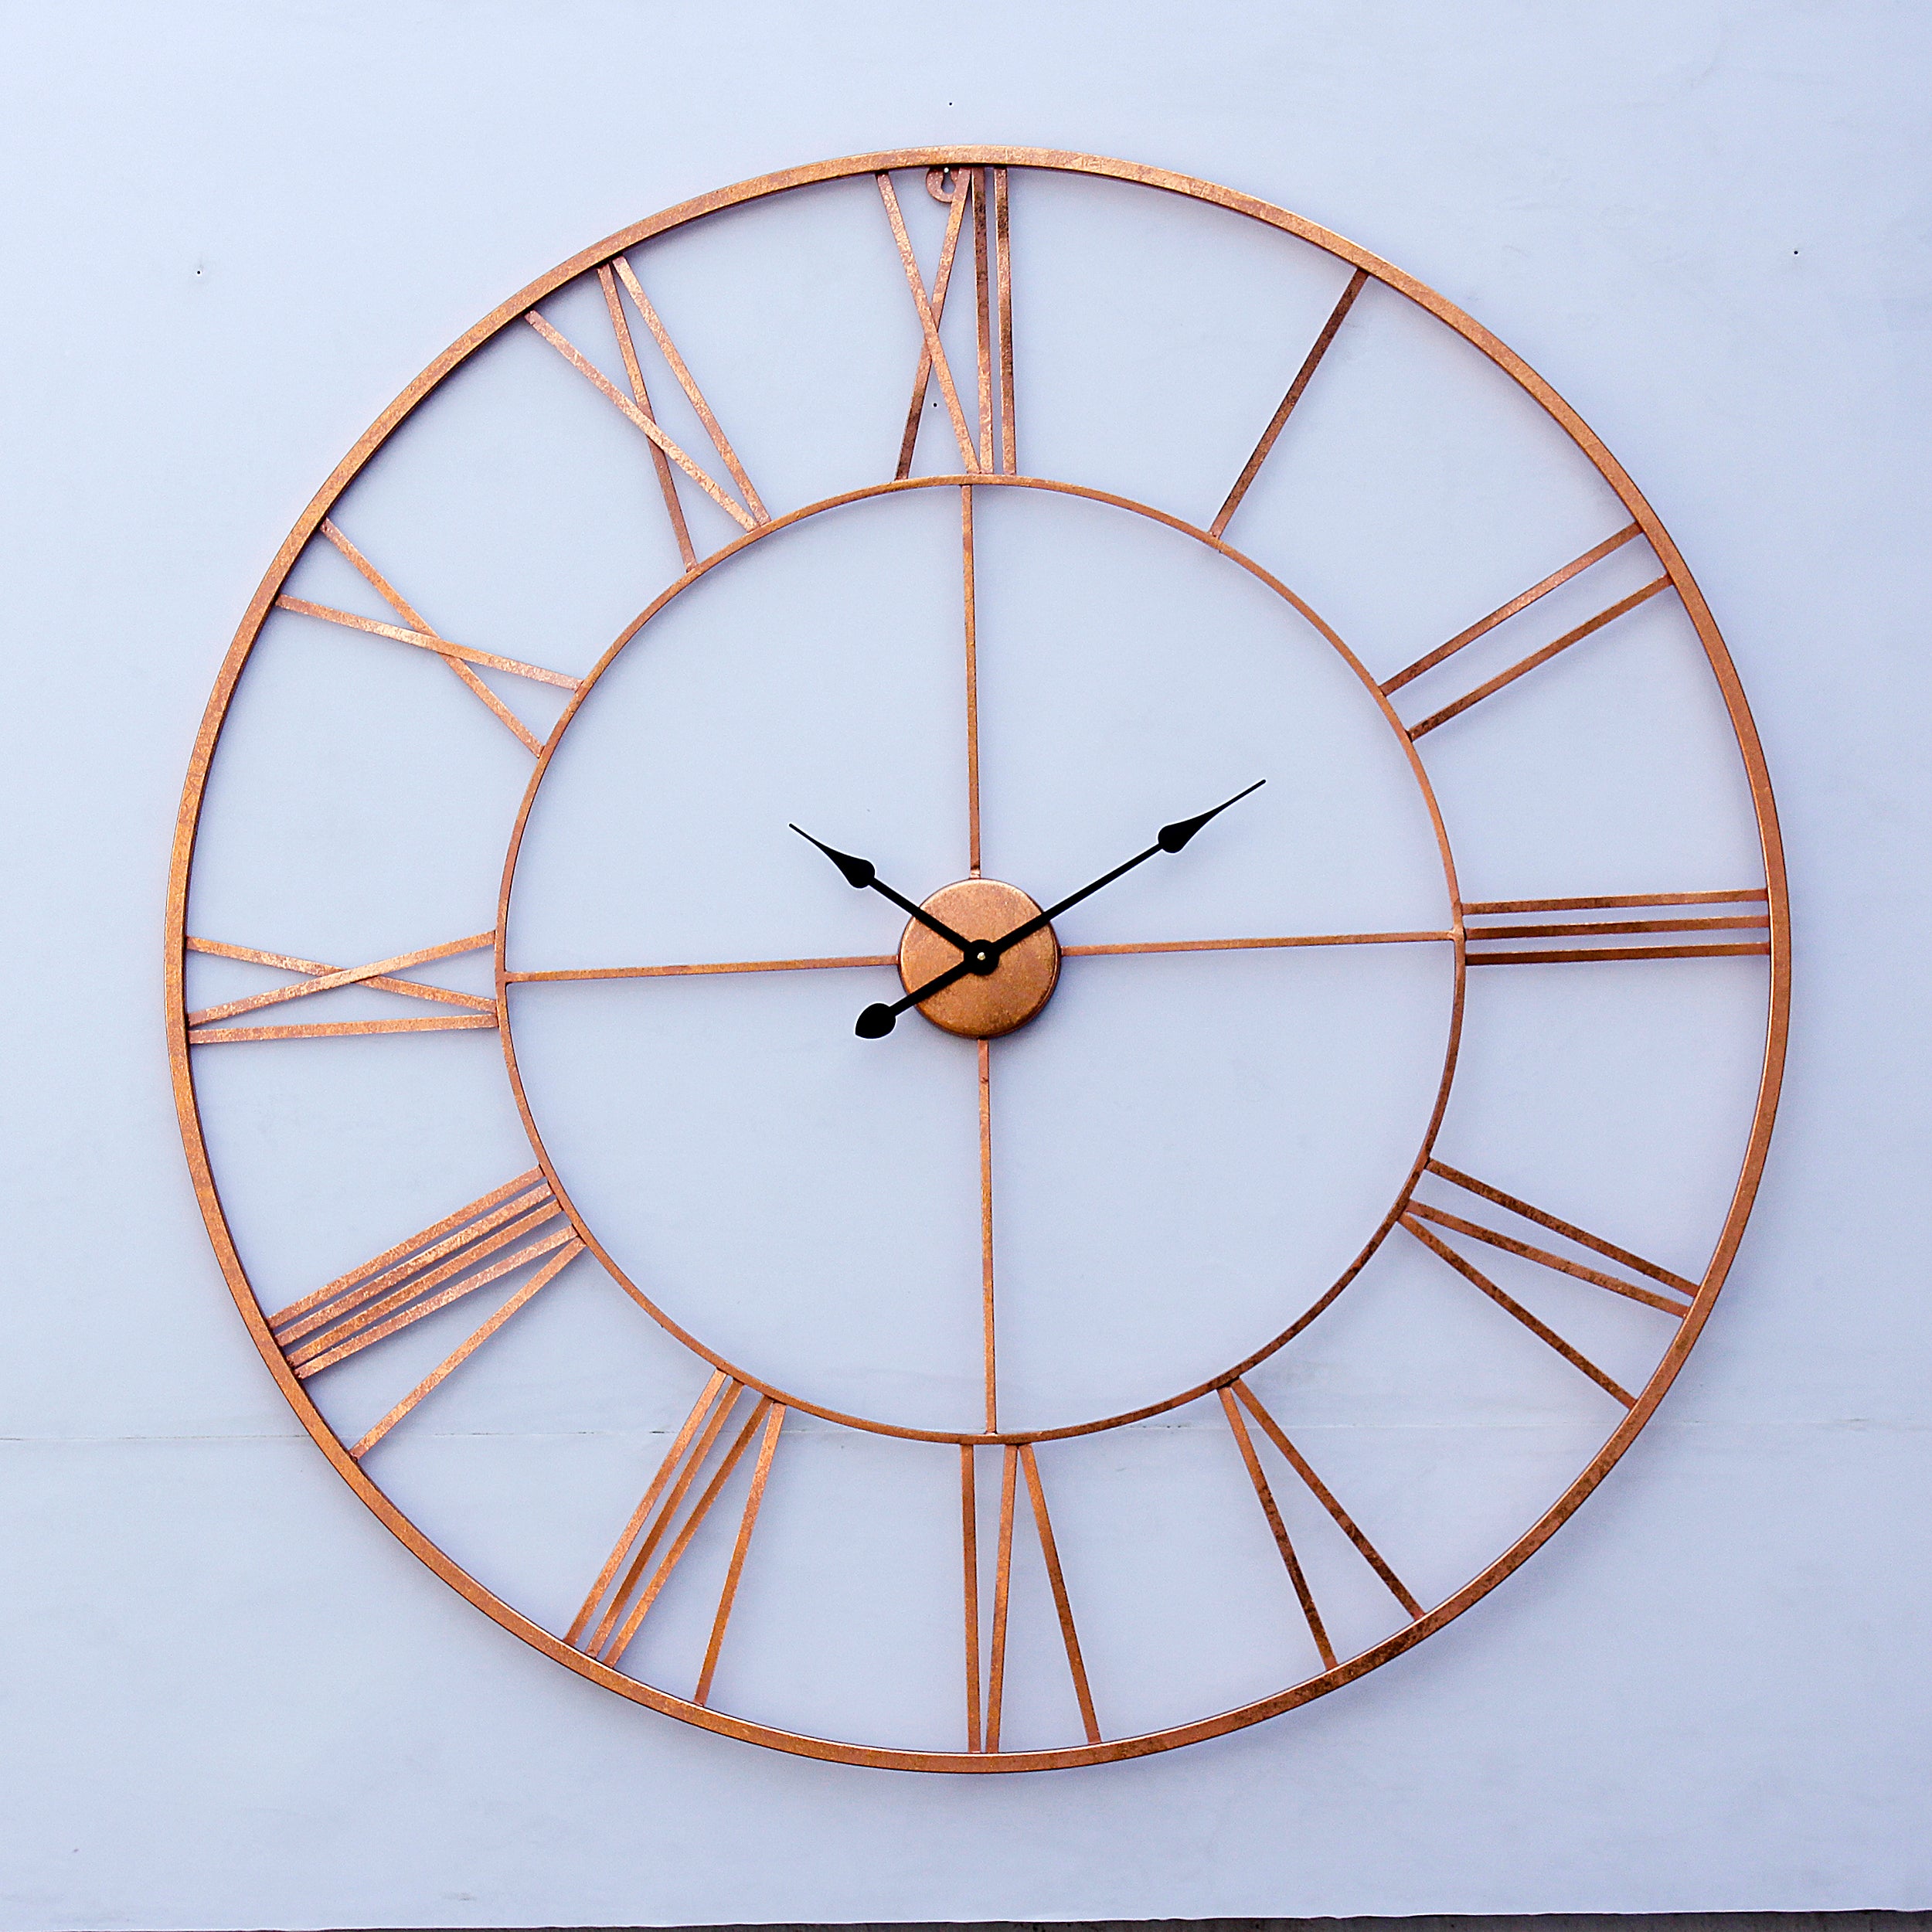 Craftter Copper 40 inch Handmade Wall Clock Metal Wall Art